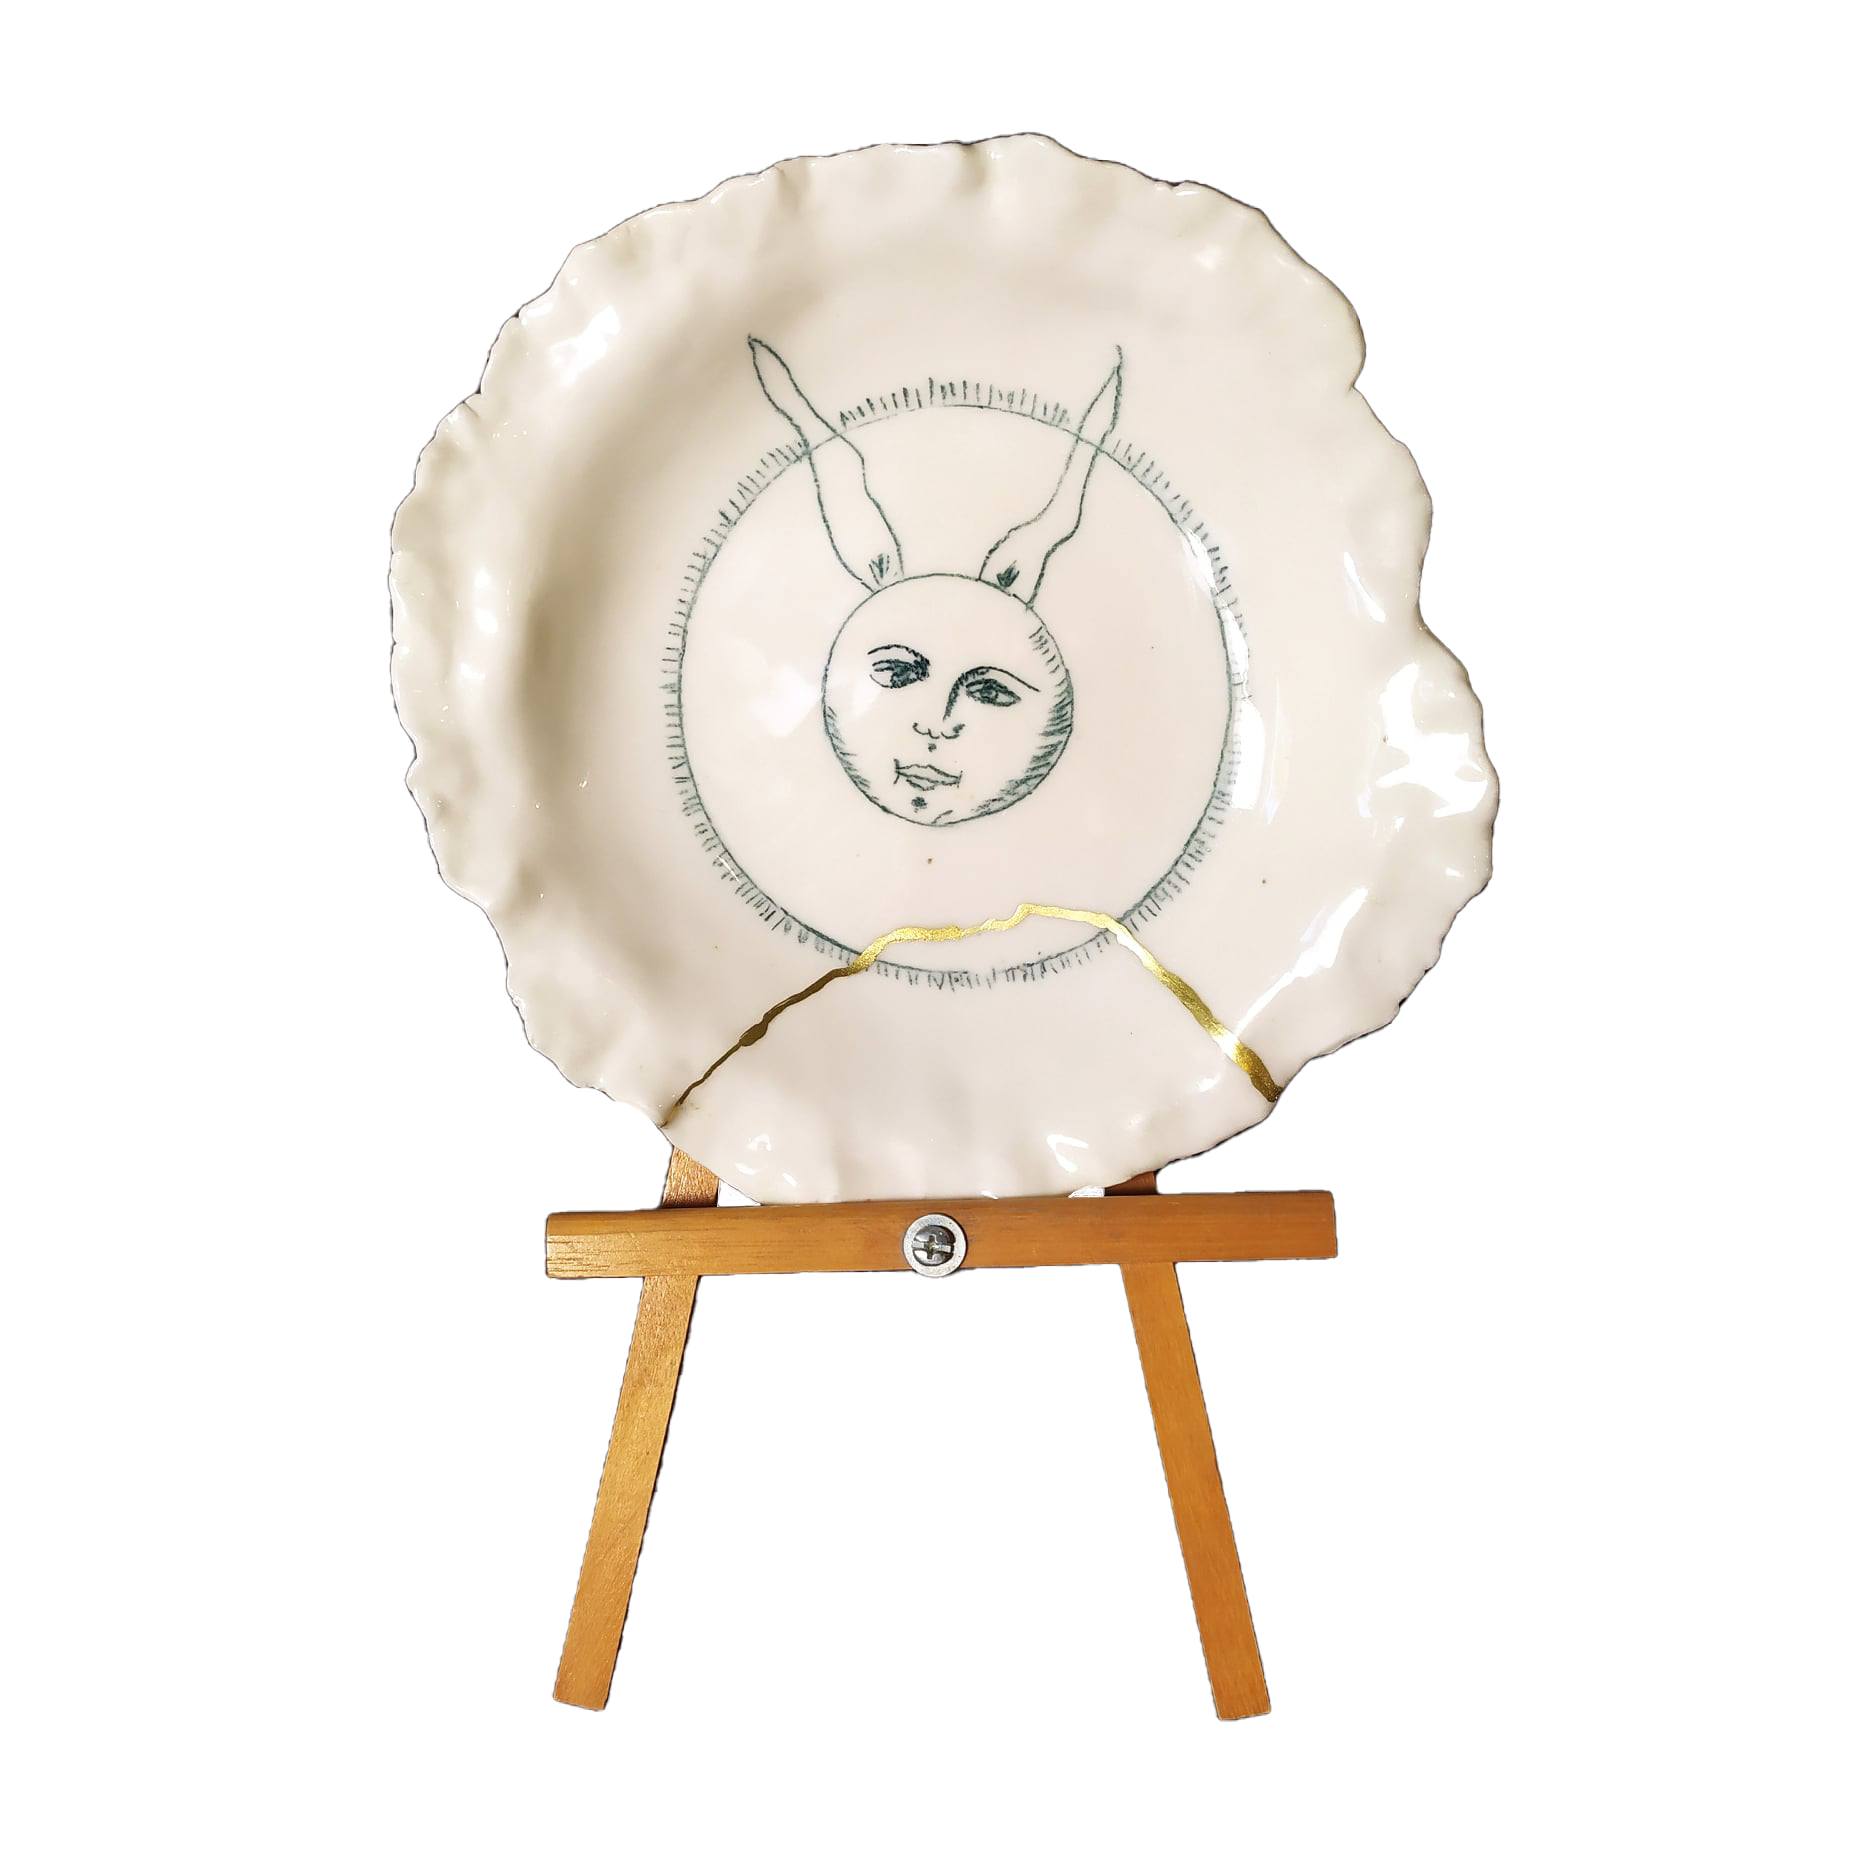 « Little bunny » - Porcelaine - Modelage à la plaque, dessin au crayon, kintsugi - 25 cm - 2022
